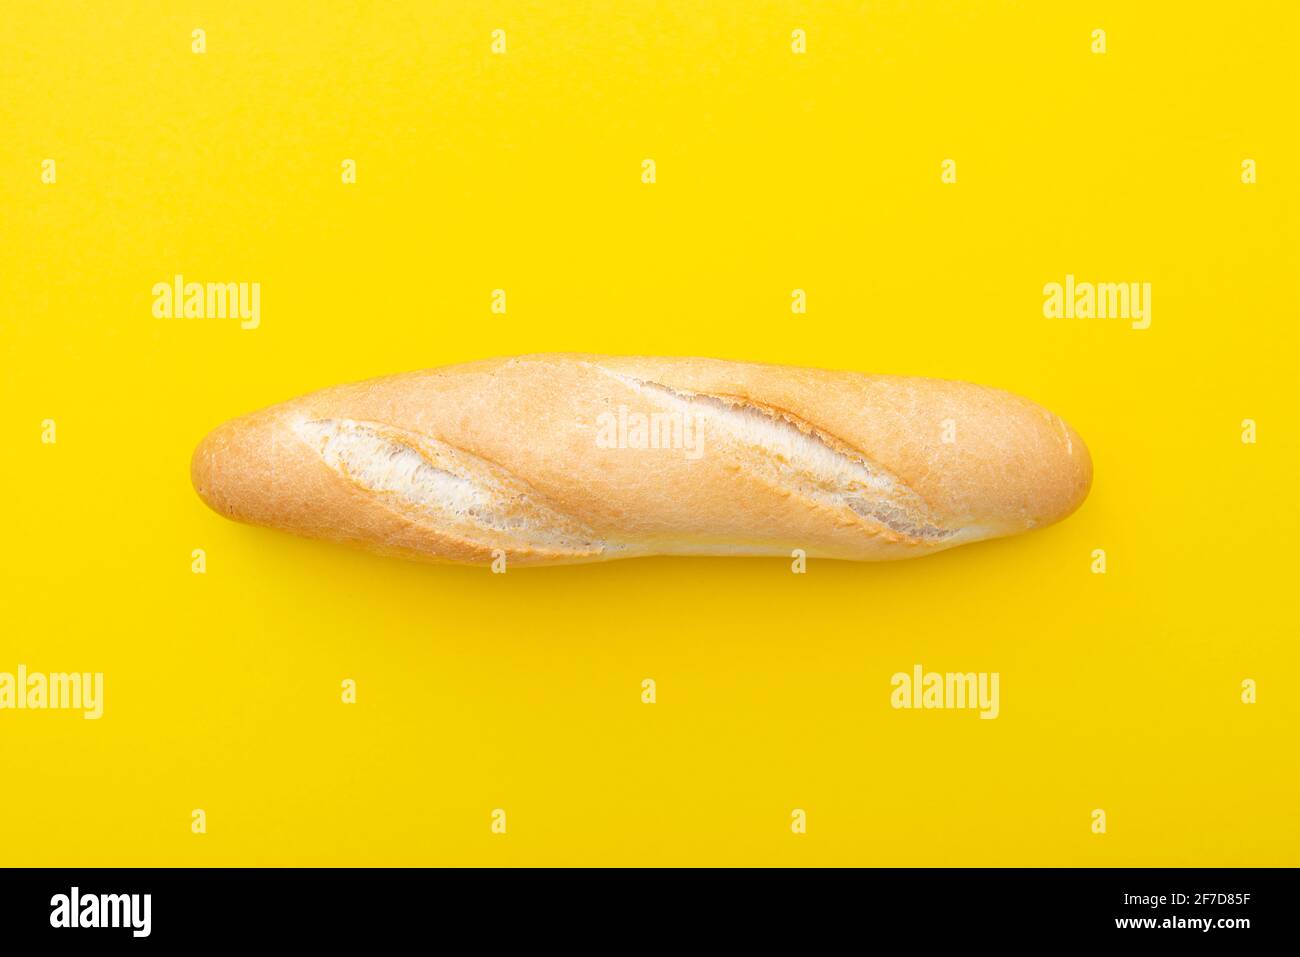 Baguette, pane francese, pane su sfondo giallo come layout. Piccolo pane francese, vista dall'alto, immagine creativa. Foto Stock